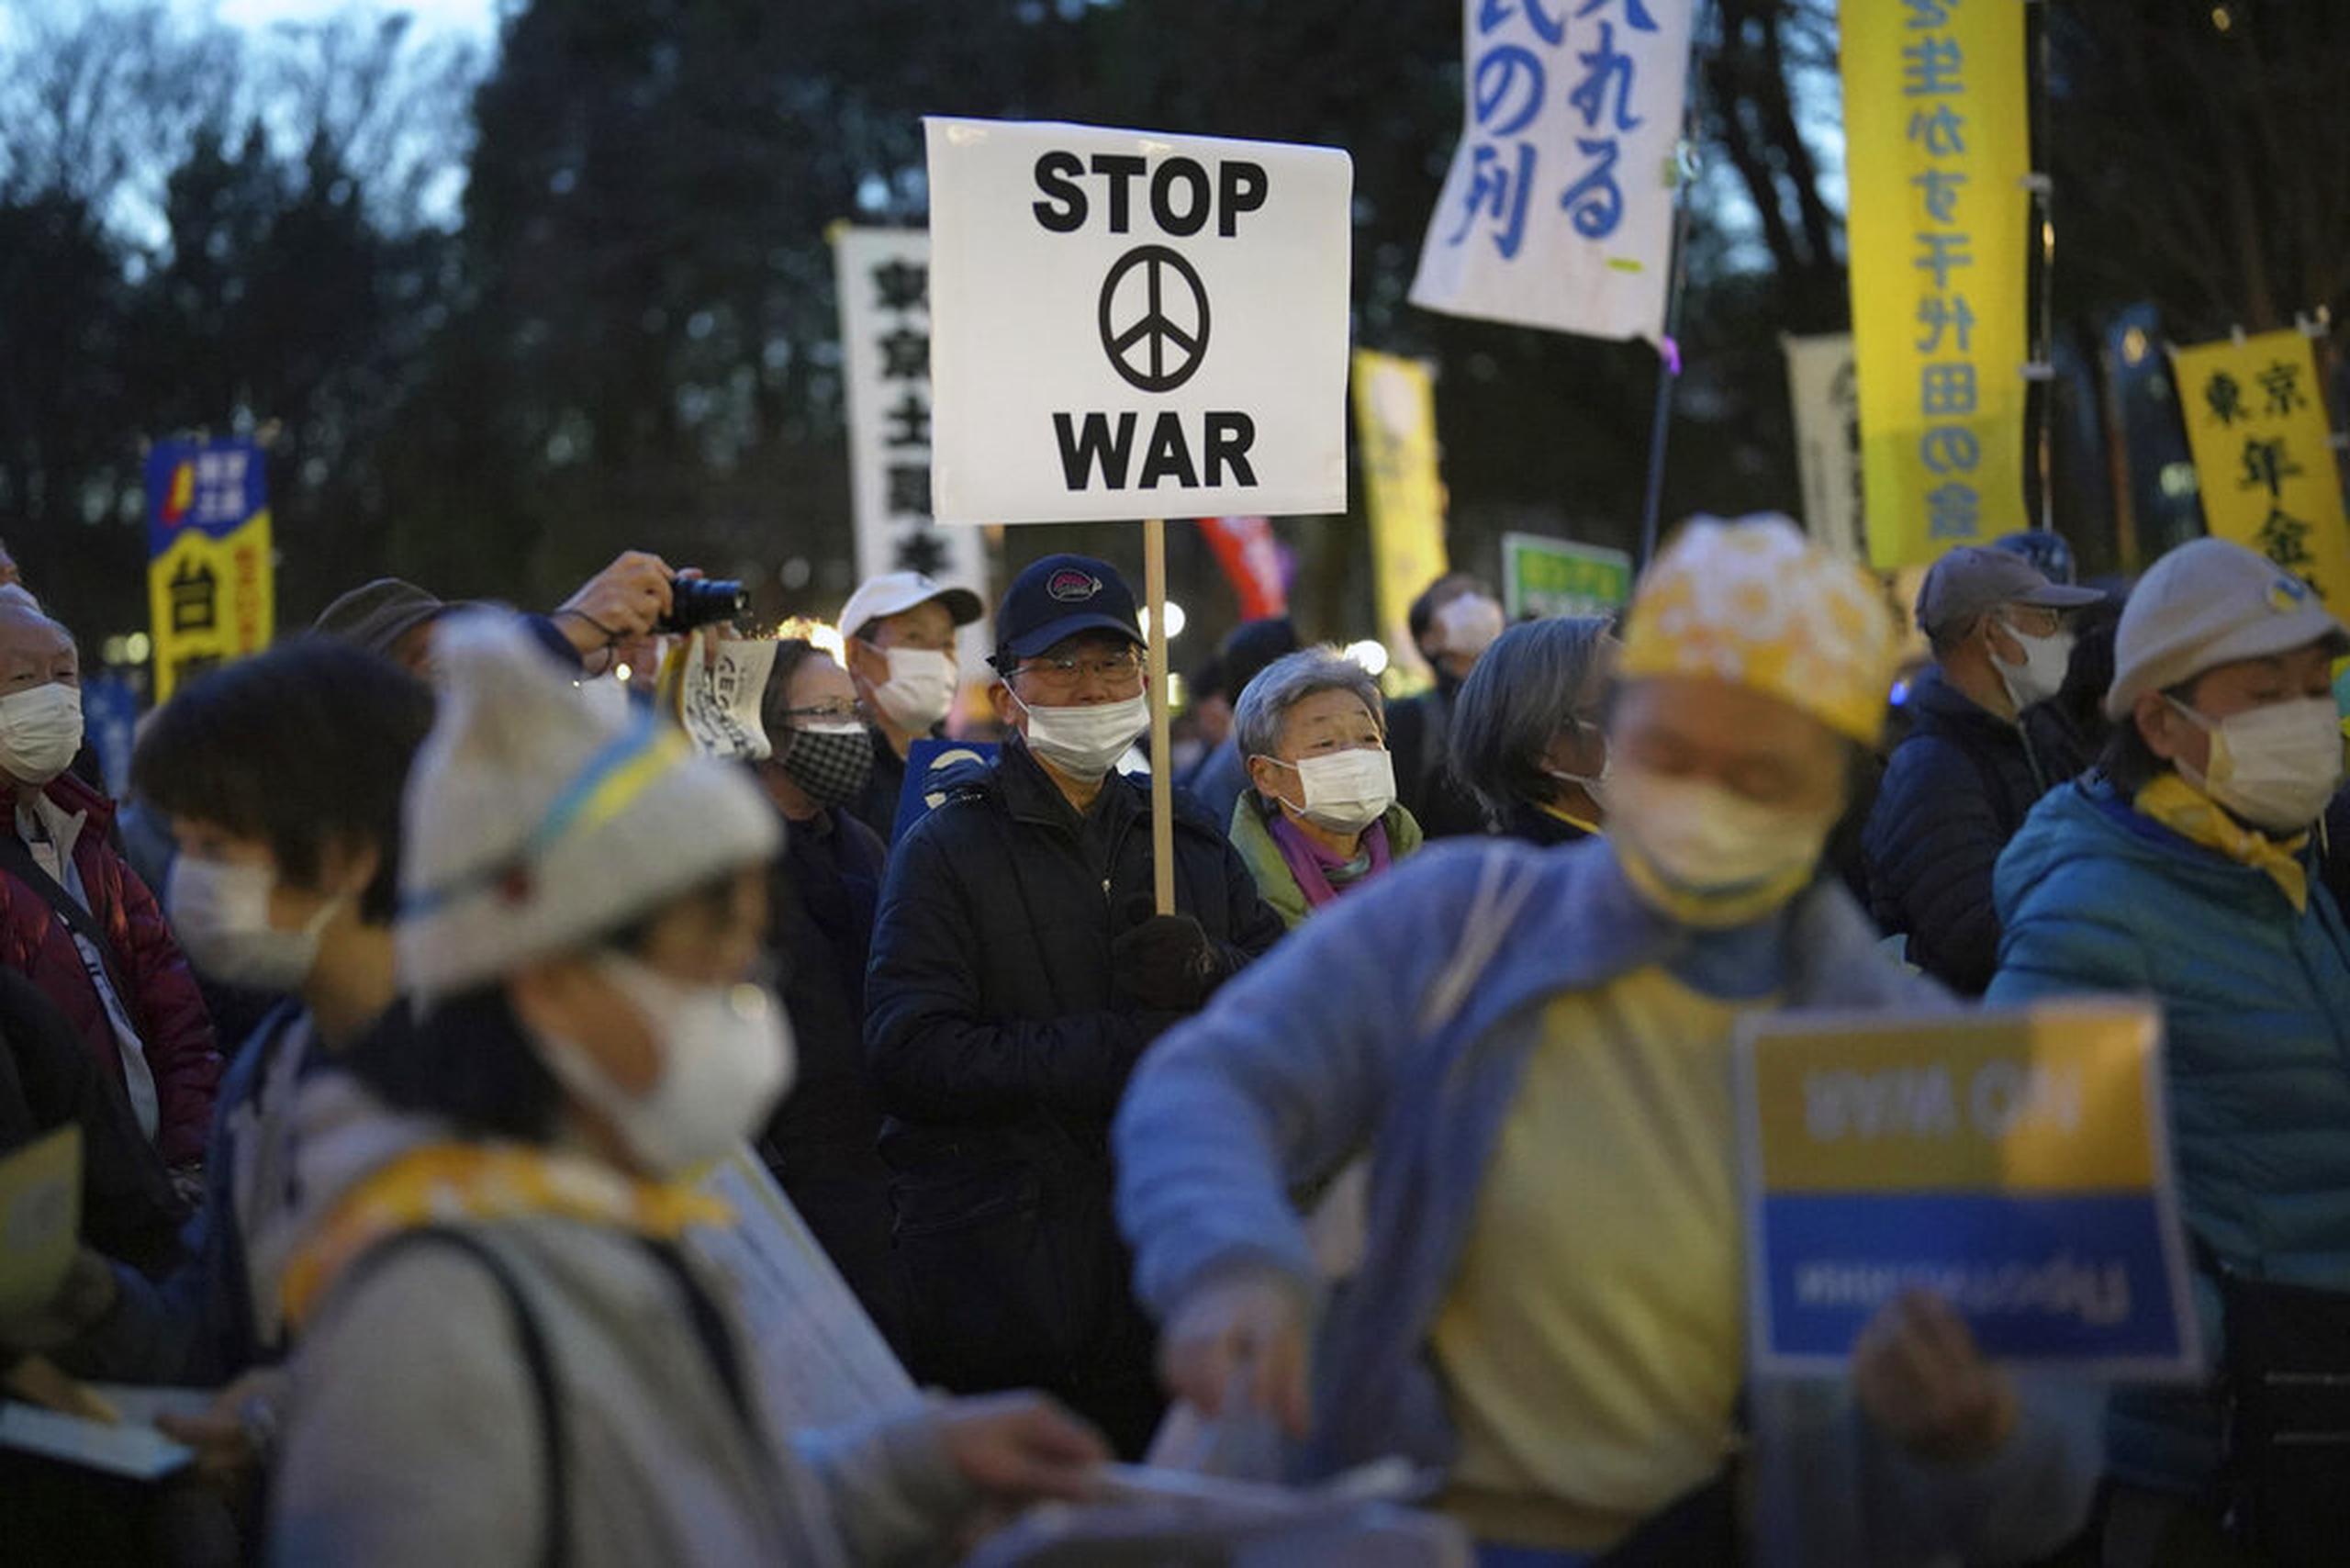 Manifestantes sostienen pancartas durante una protesta contra la invasión rusa en Ucrania, el 11 de marzo de 2022 en Tokio.